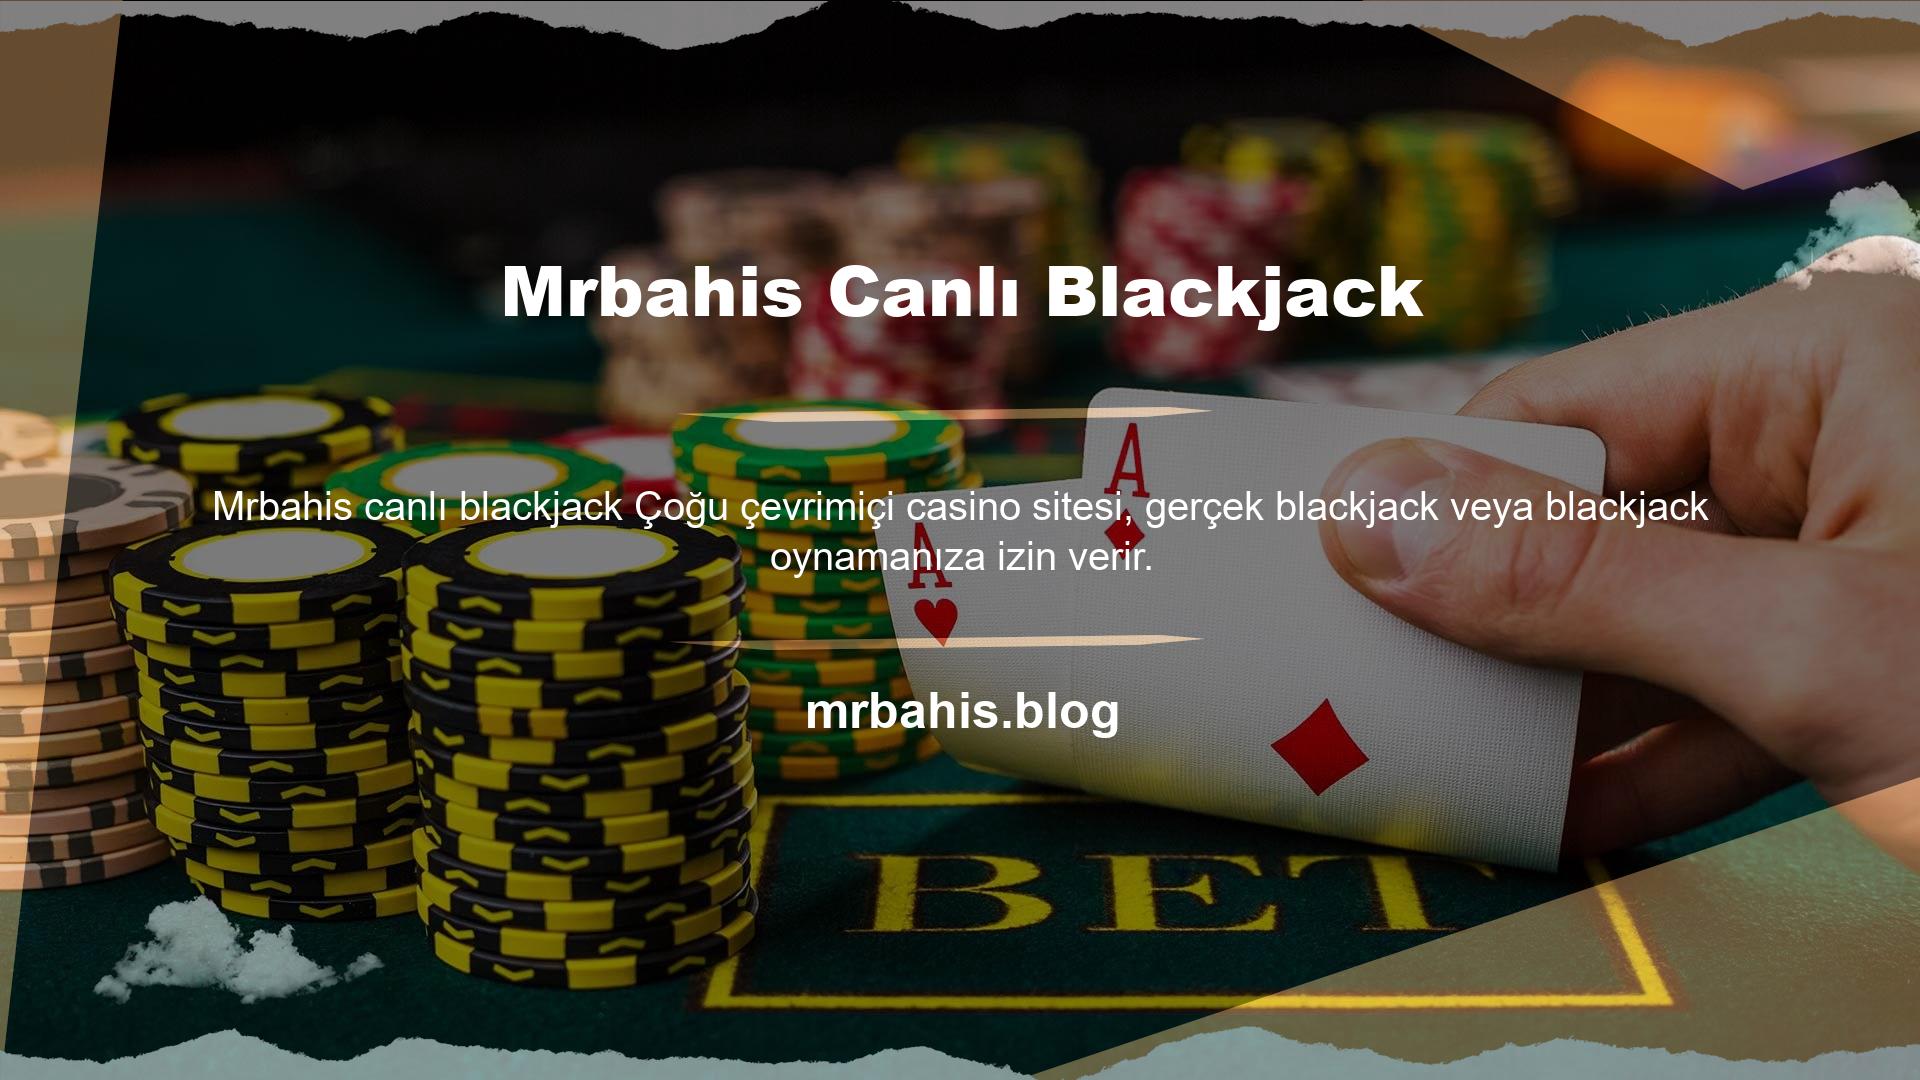 Blackjack oyuncuları genellikle taktiklerine ve şanslarına güvenirler